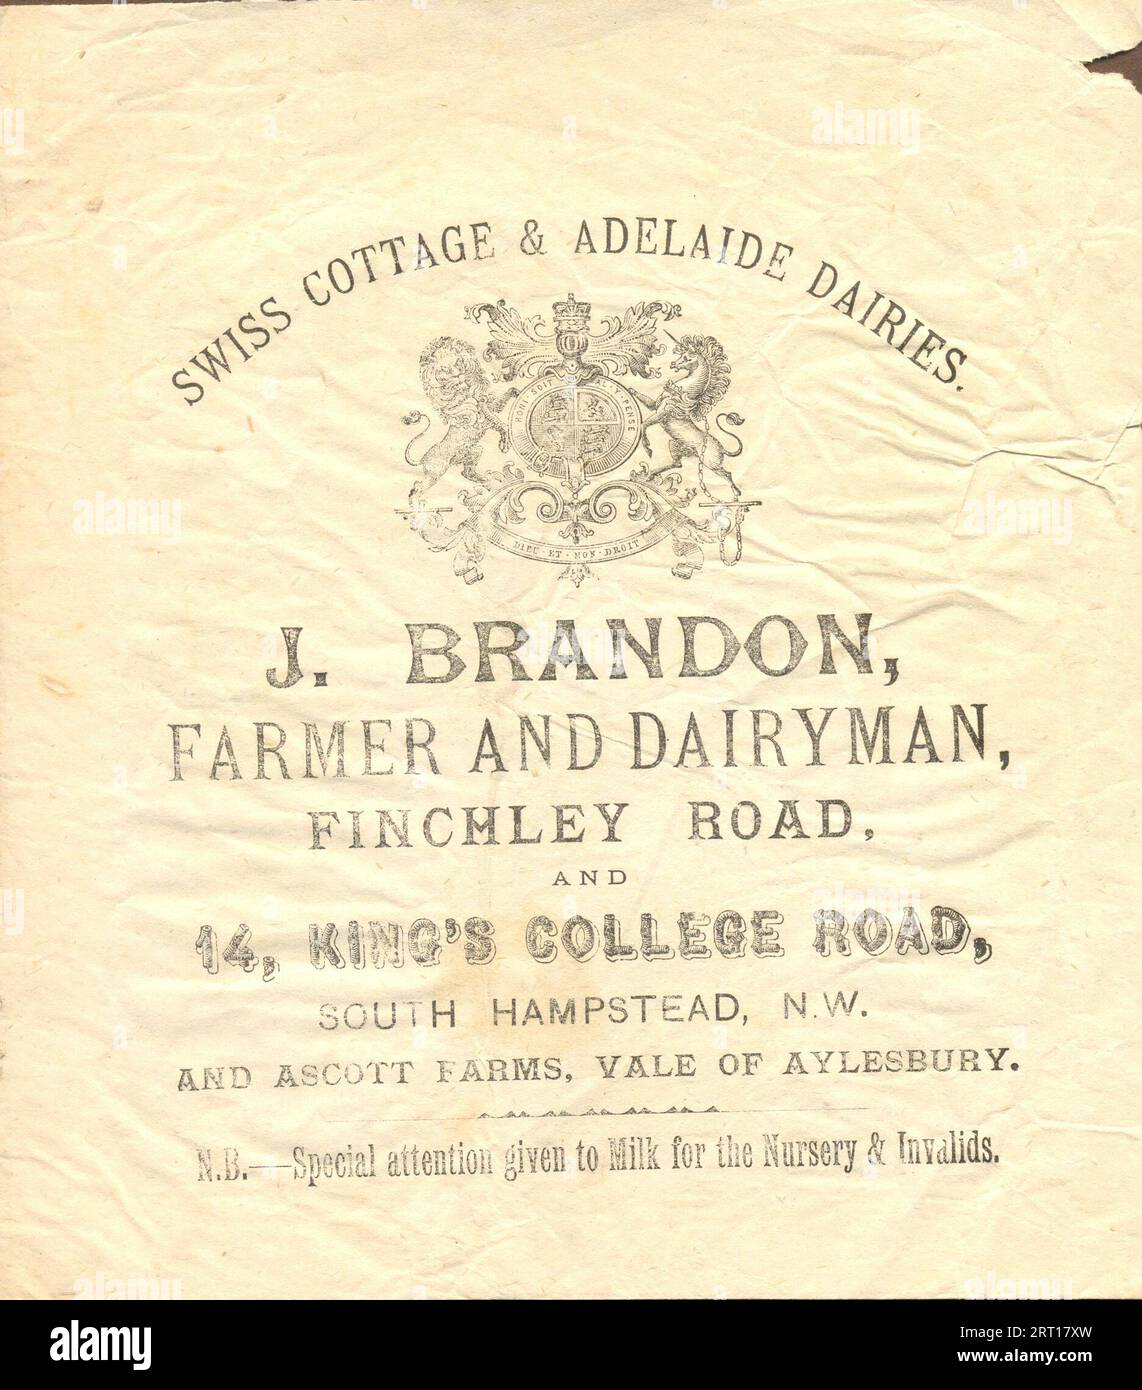 Papiertütenwerbung für Swiss Cottage & Adelaide Dairies, J Brandon, Farmer and Dairyman, Finchley Road und 14 King's College Road, South Hampstead, N.W. um 1885 Stockfoto